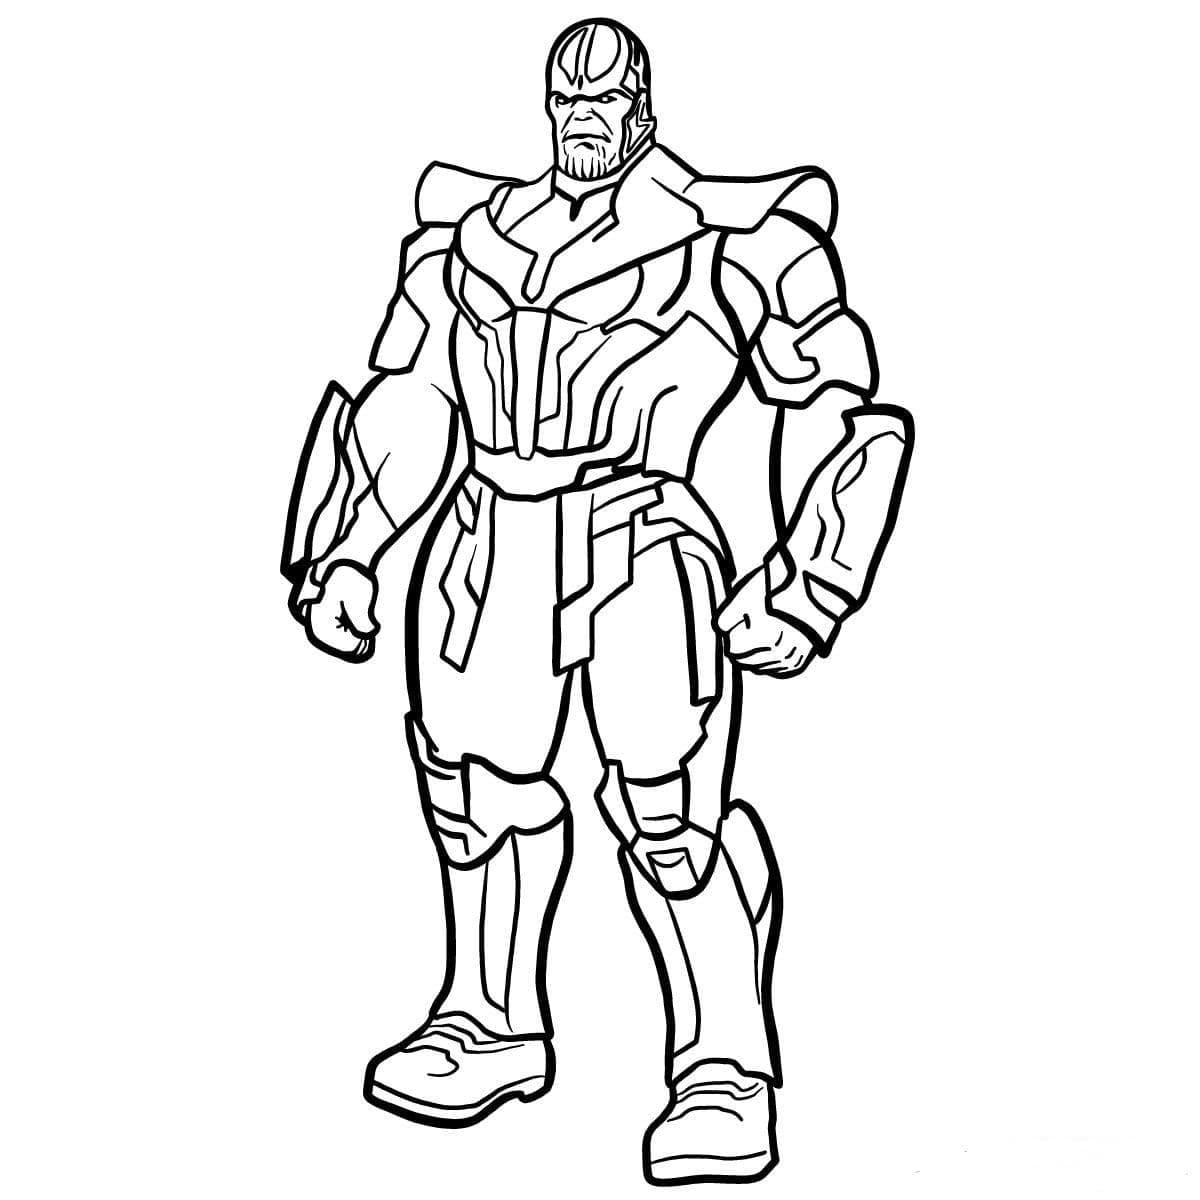 Танос - Тёмный владыка, суперзлодей. Могущественный космический военачальник